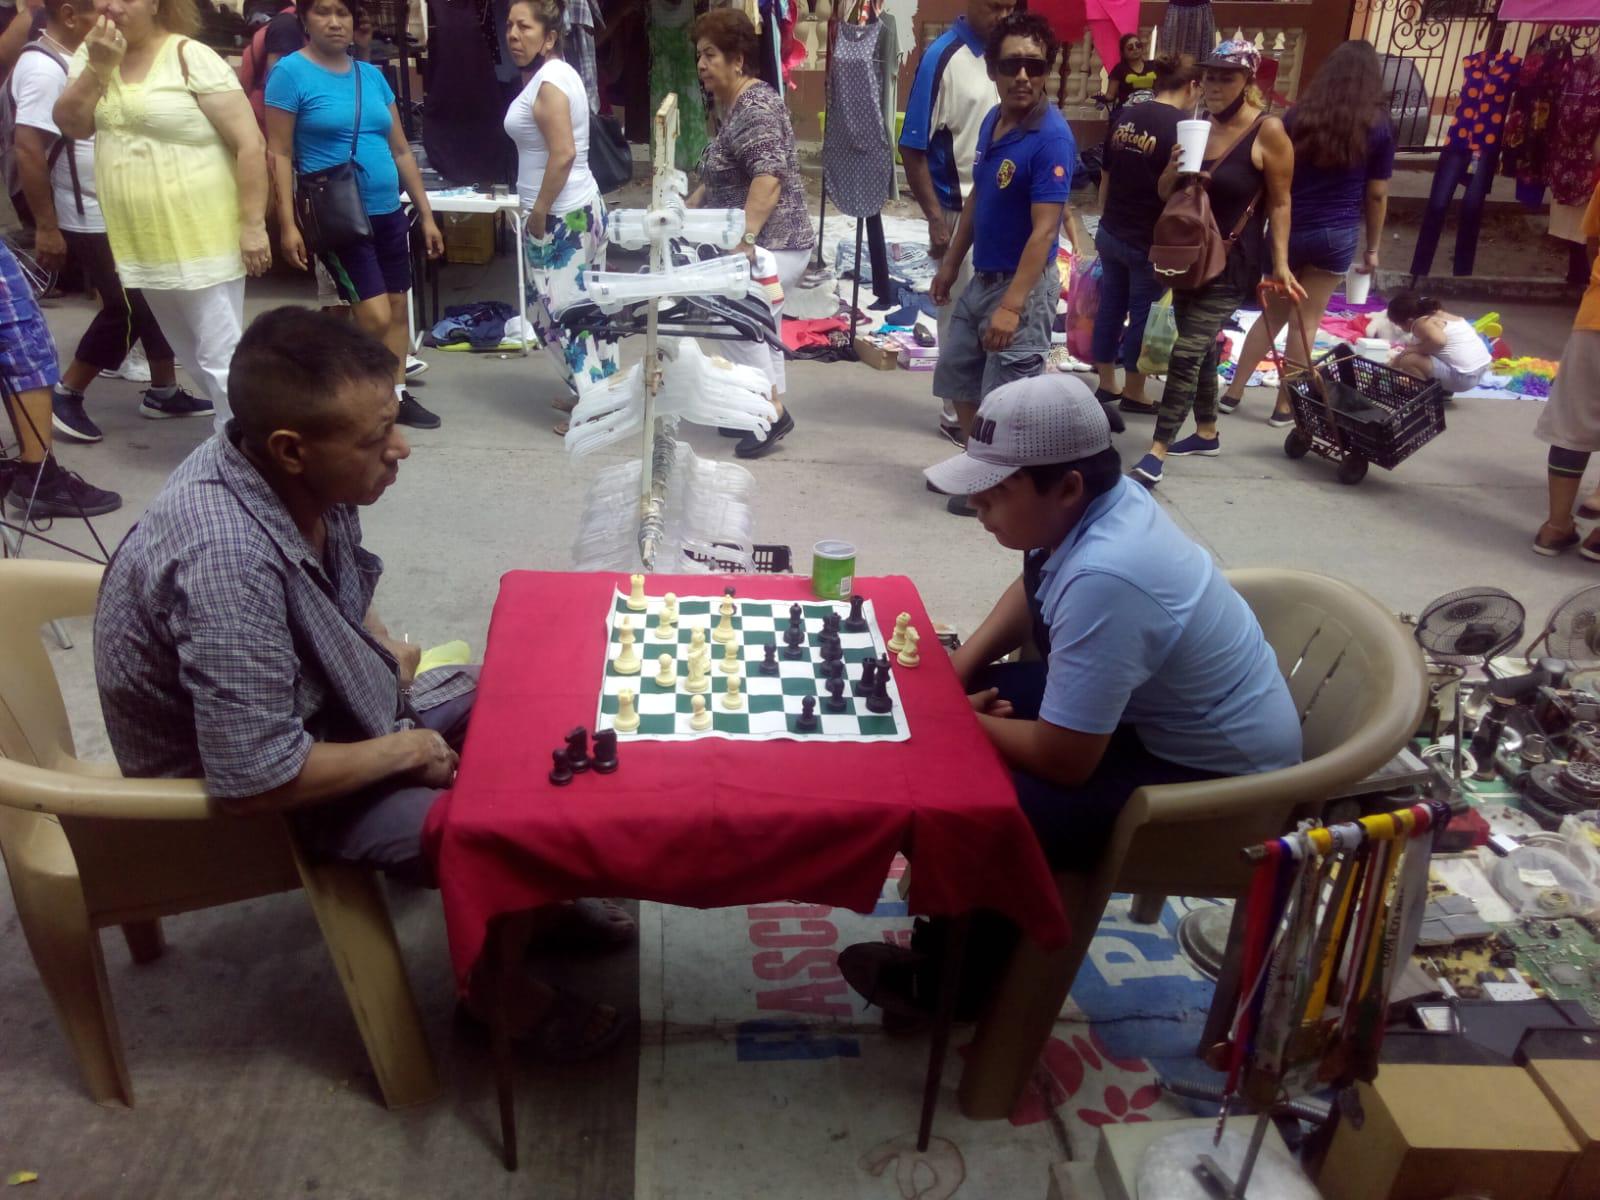 $!¿Le sabes al ajedrez? En Mazatlán, Luis te reta a ganarle una partida en el tianguis de la Juárez